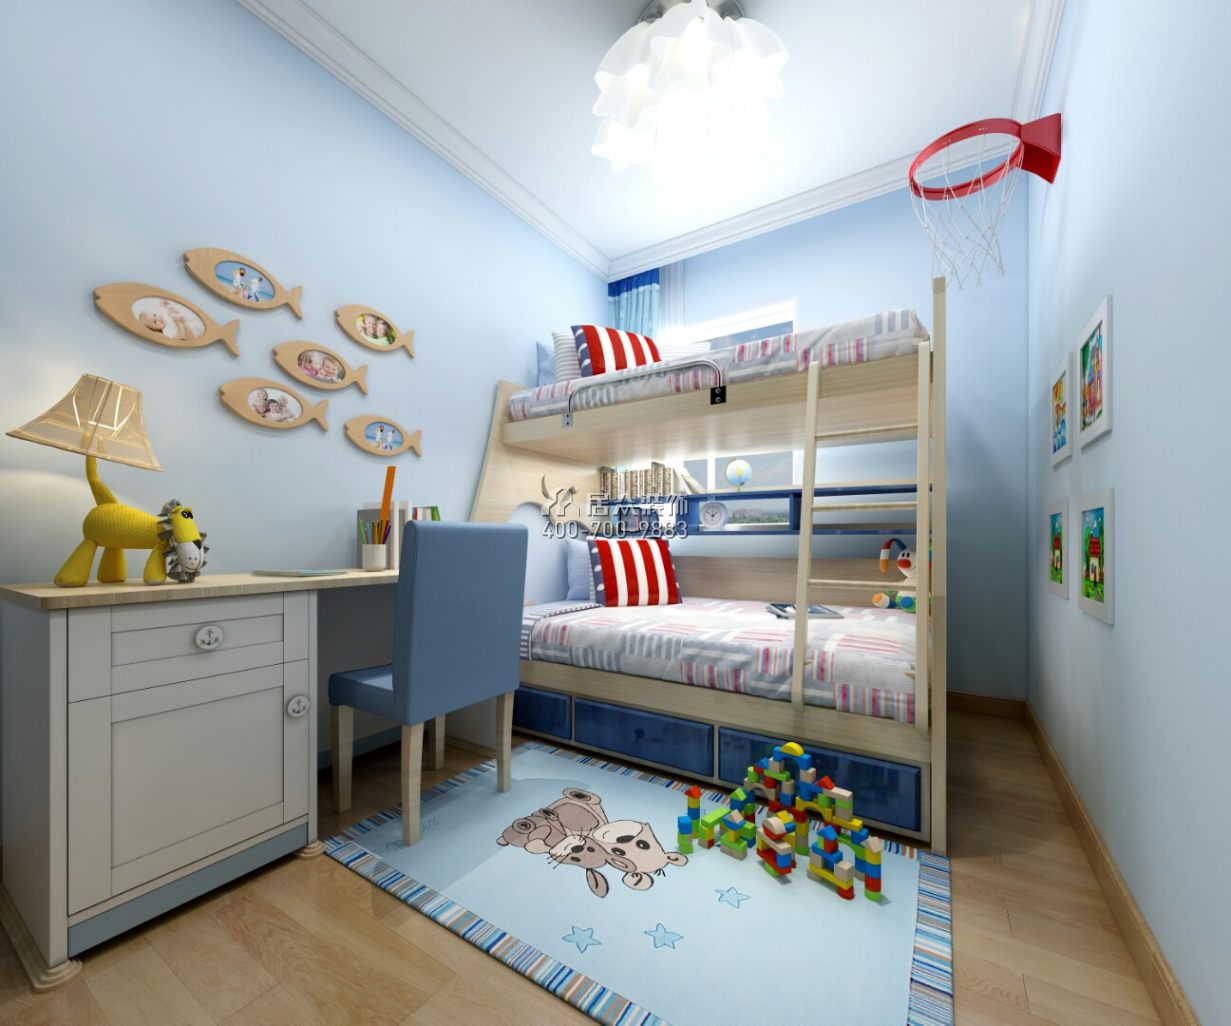 香山美樹苑100平方米現代簡約風格平層戶型兒童房裝修效果圖